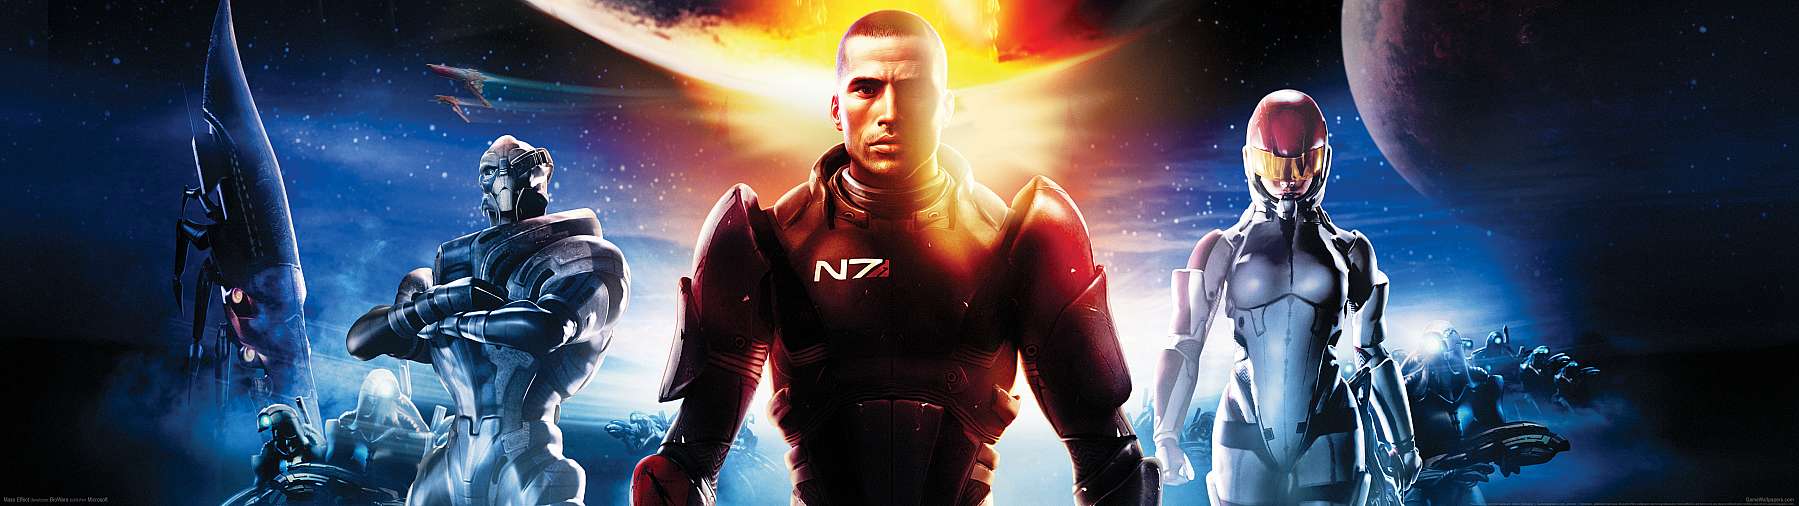 Mass Effect superwide fond d'cran 04